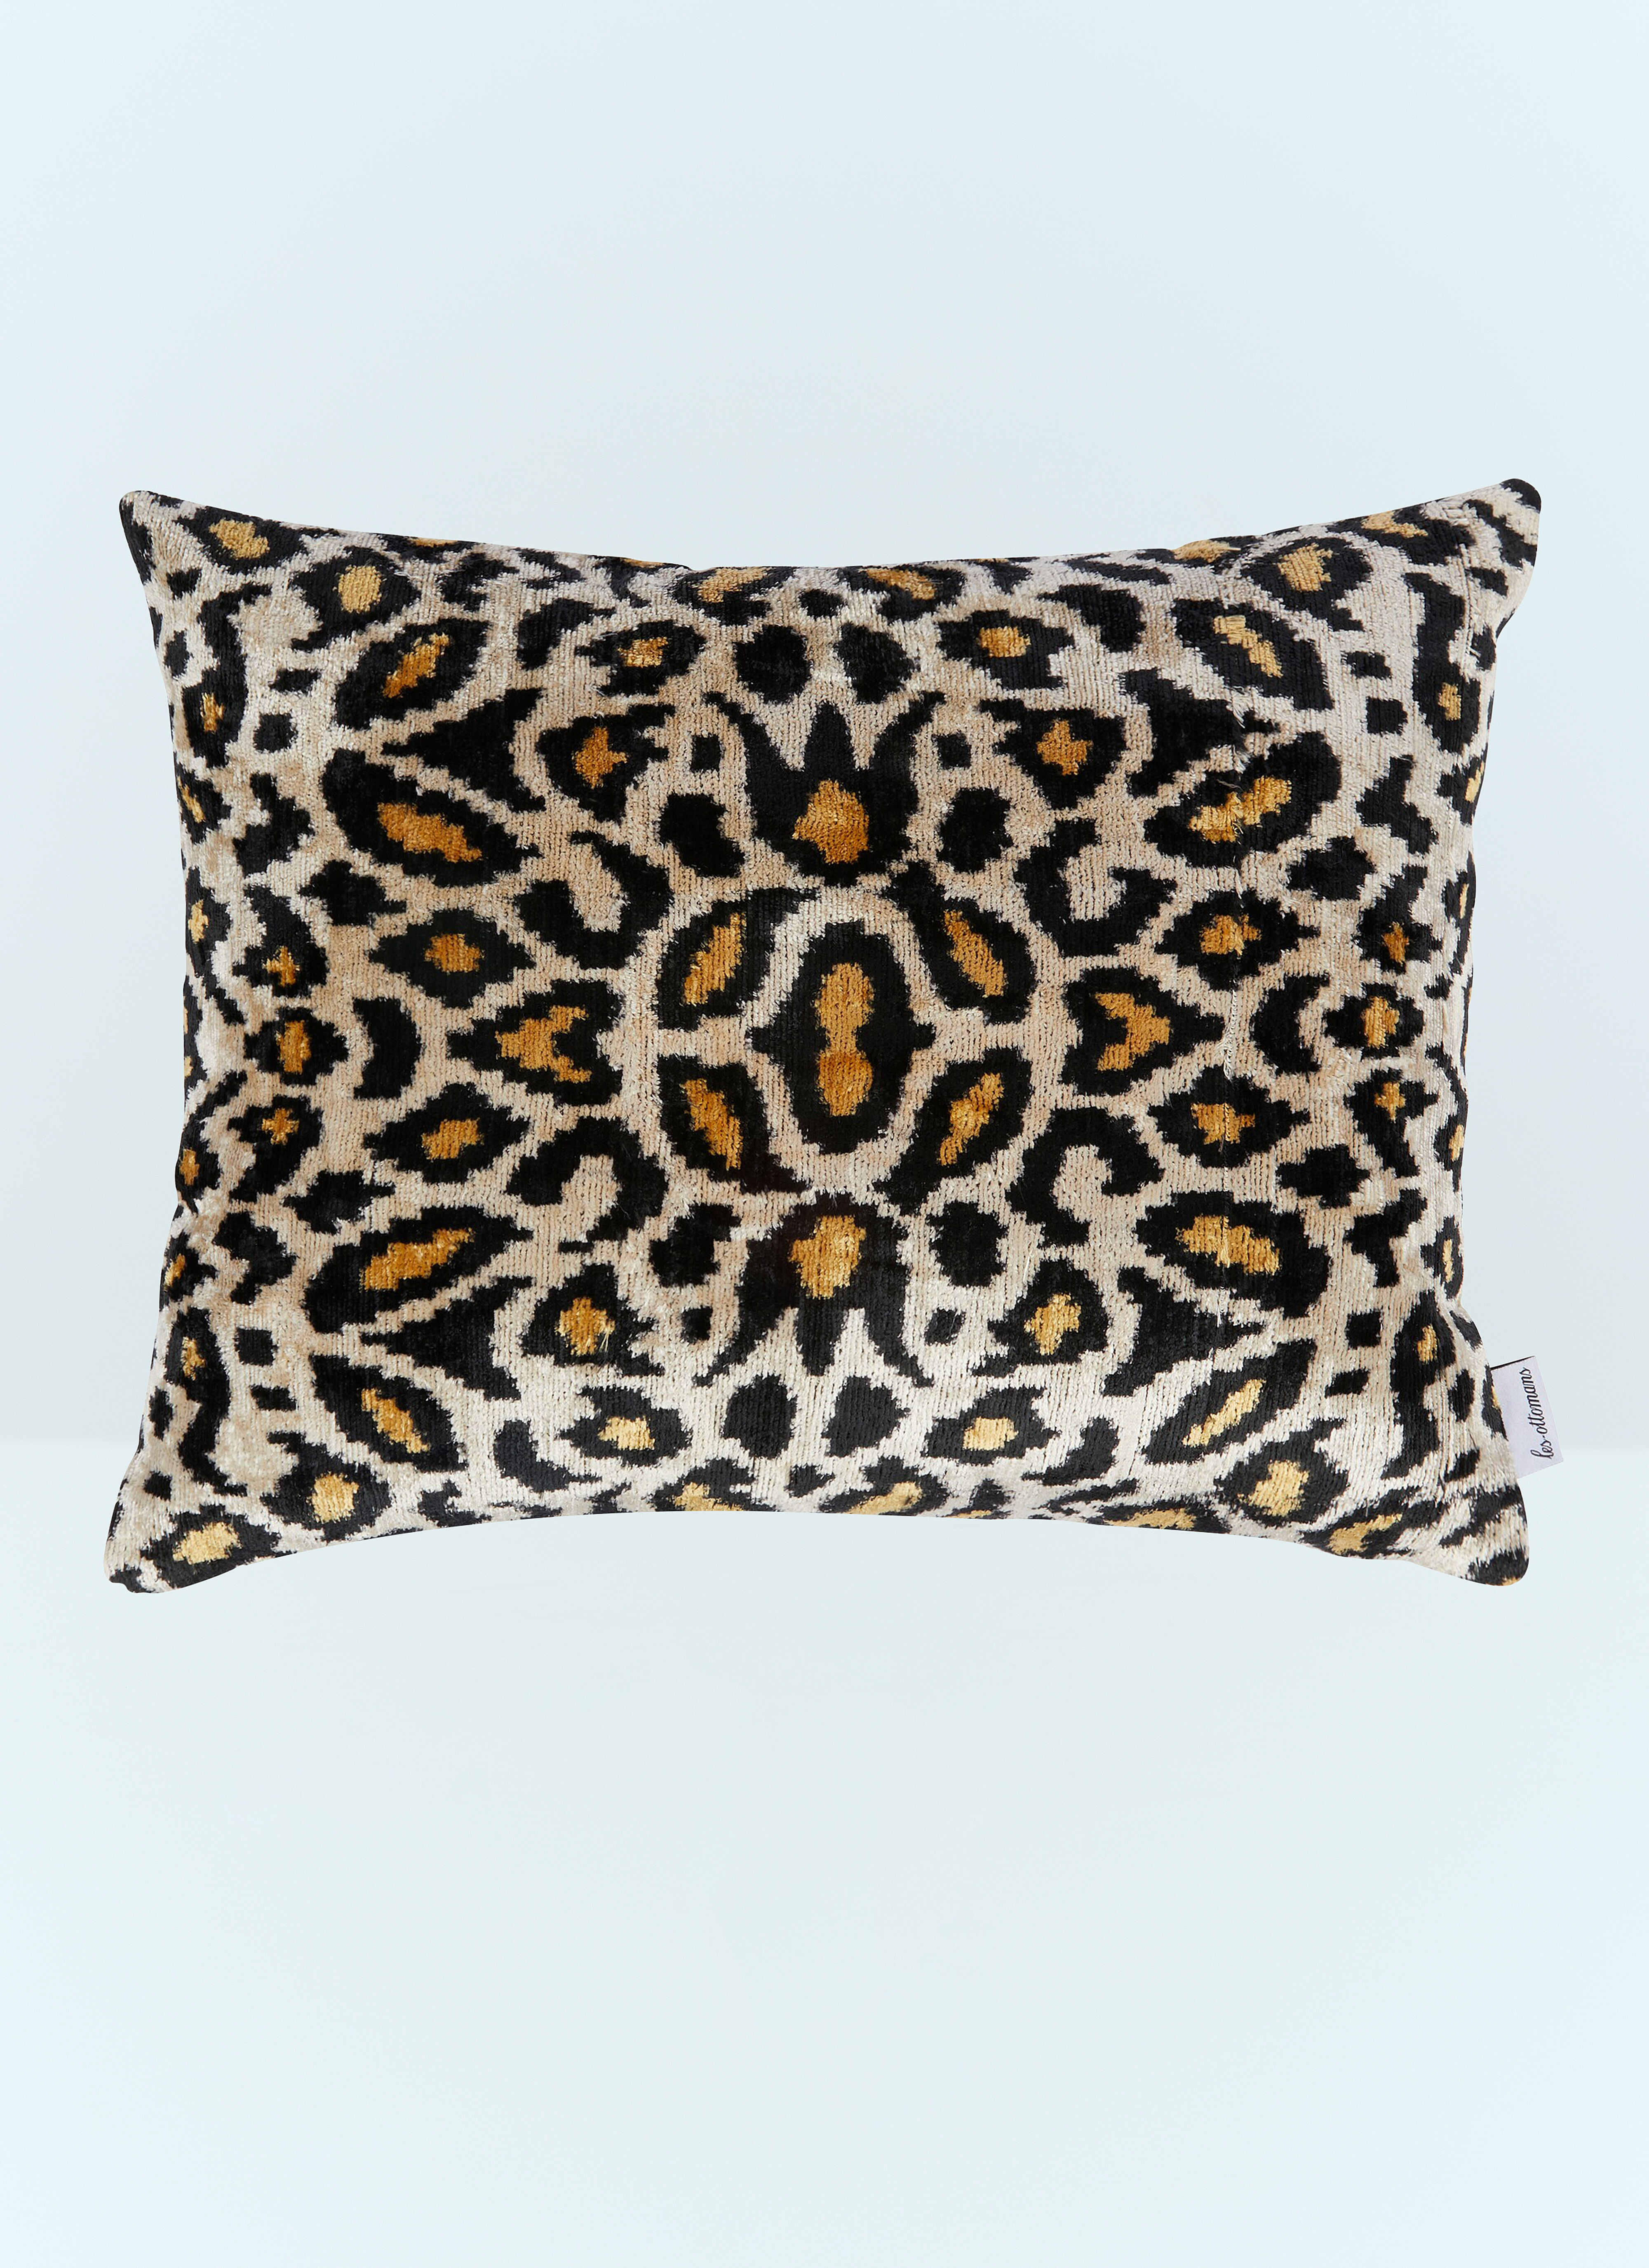 Seletti Leopard Print Velvet Cushion White wps0691119